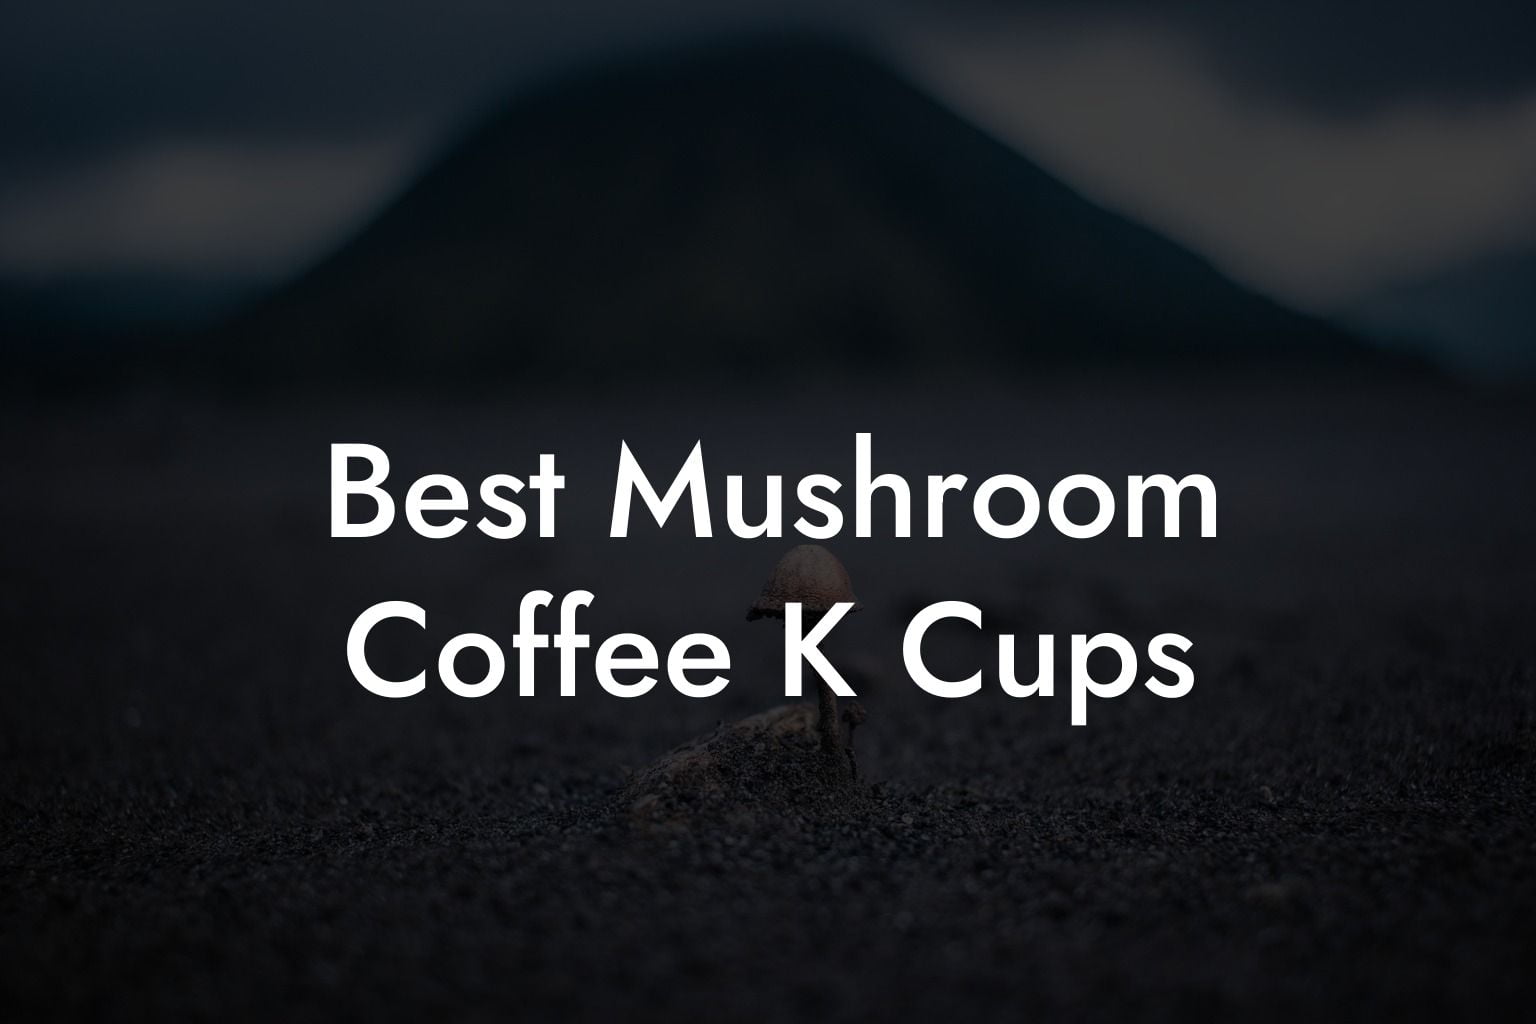 Best Mushroom Coffee K Cups